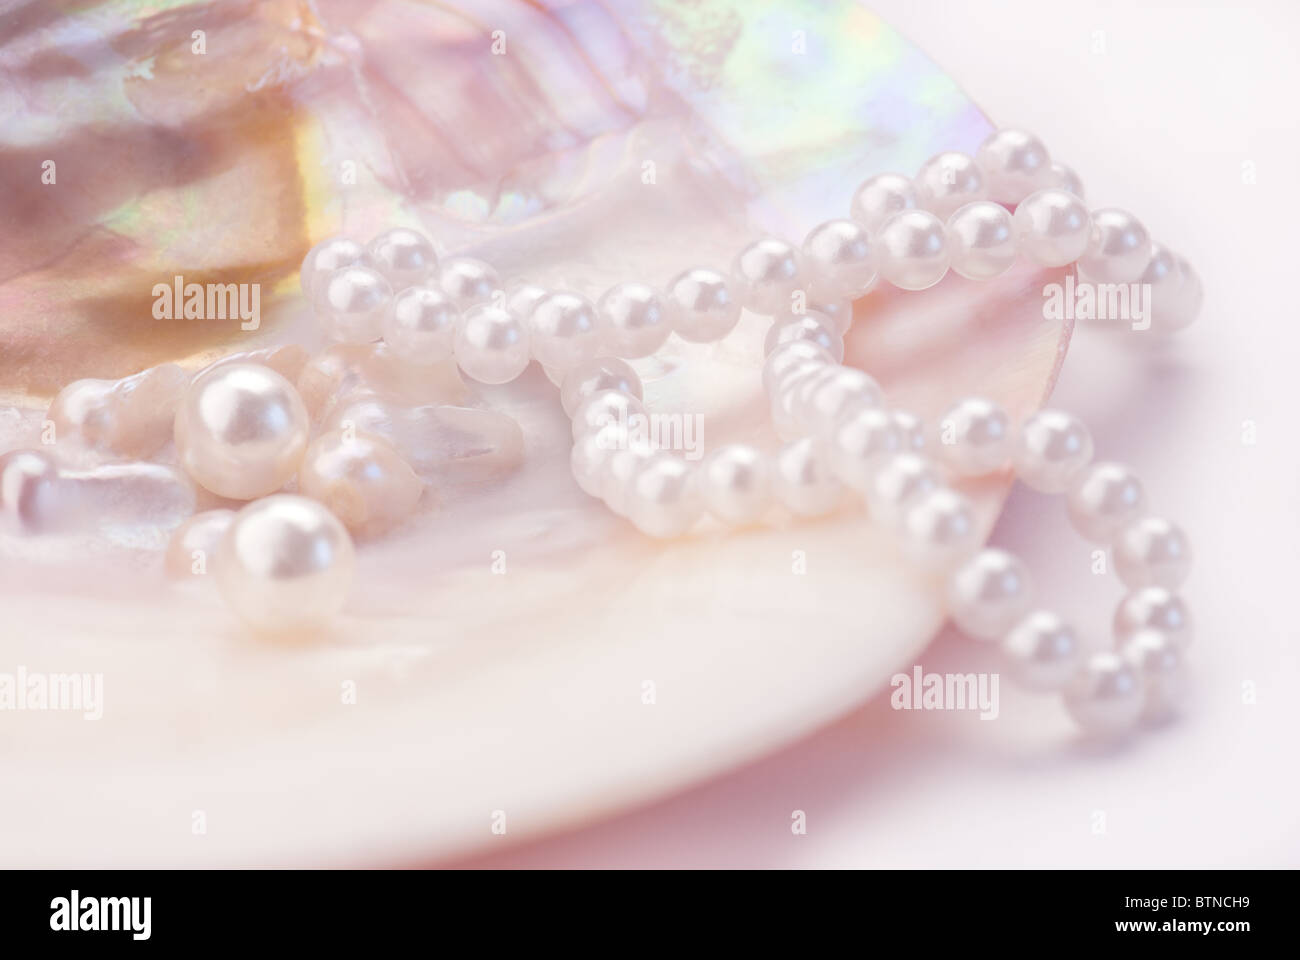 Collier de perles et macro dans une coquille d'huître. Image teintée rose Banque D'Images